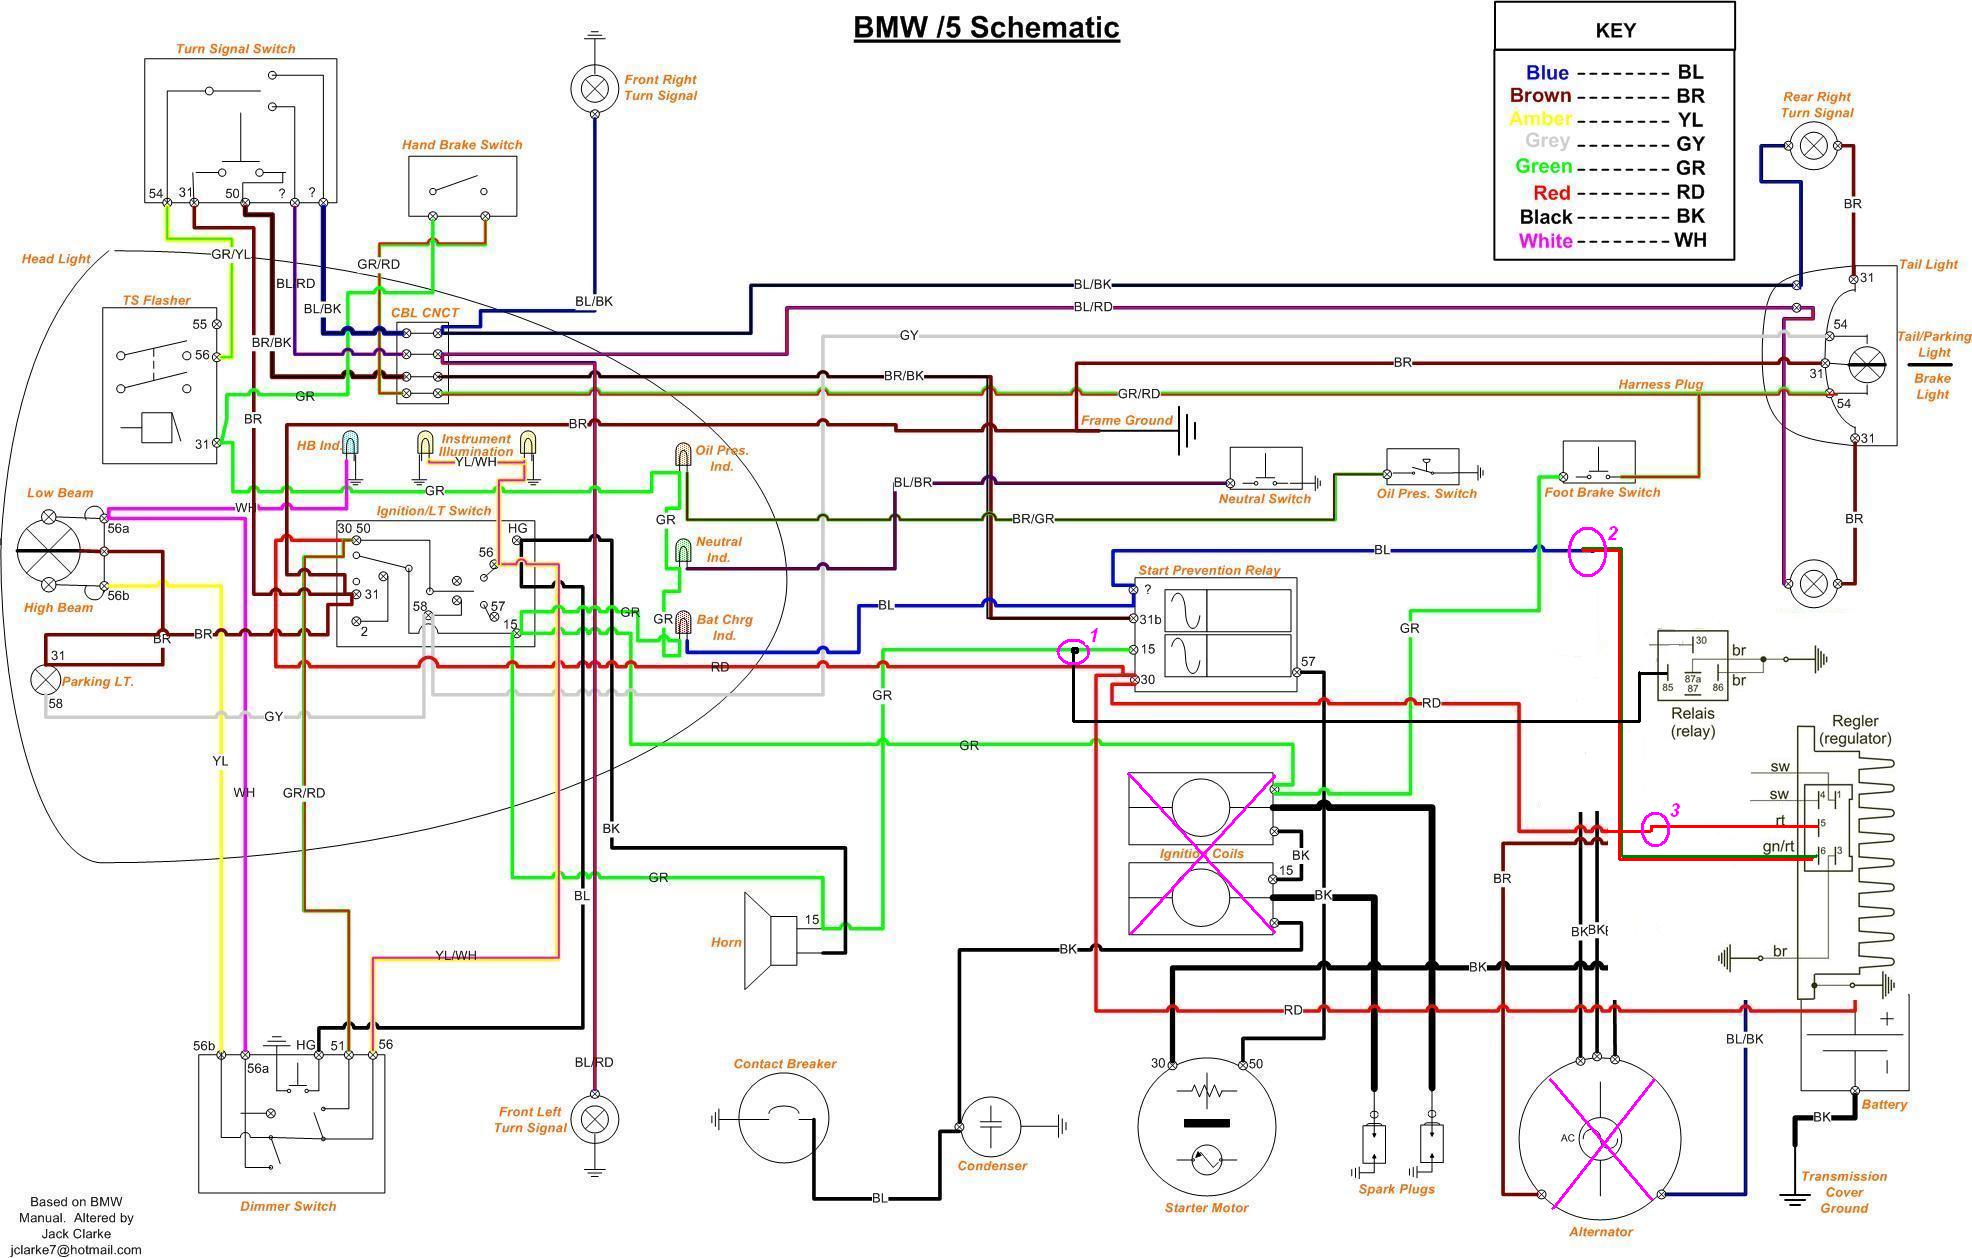 bmw r75 wiring diagram